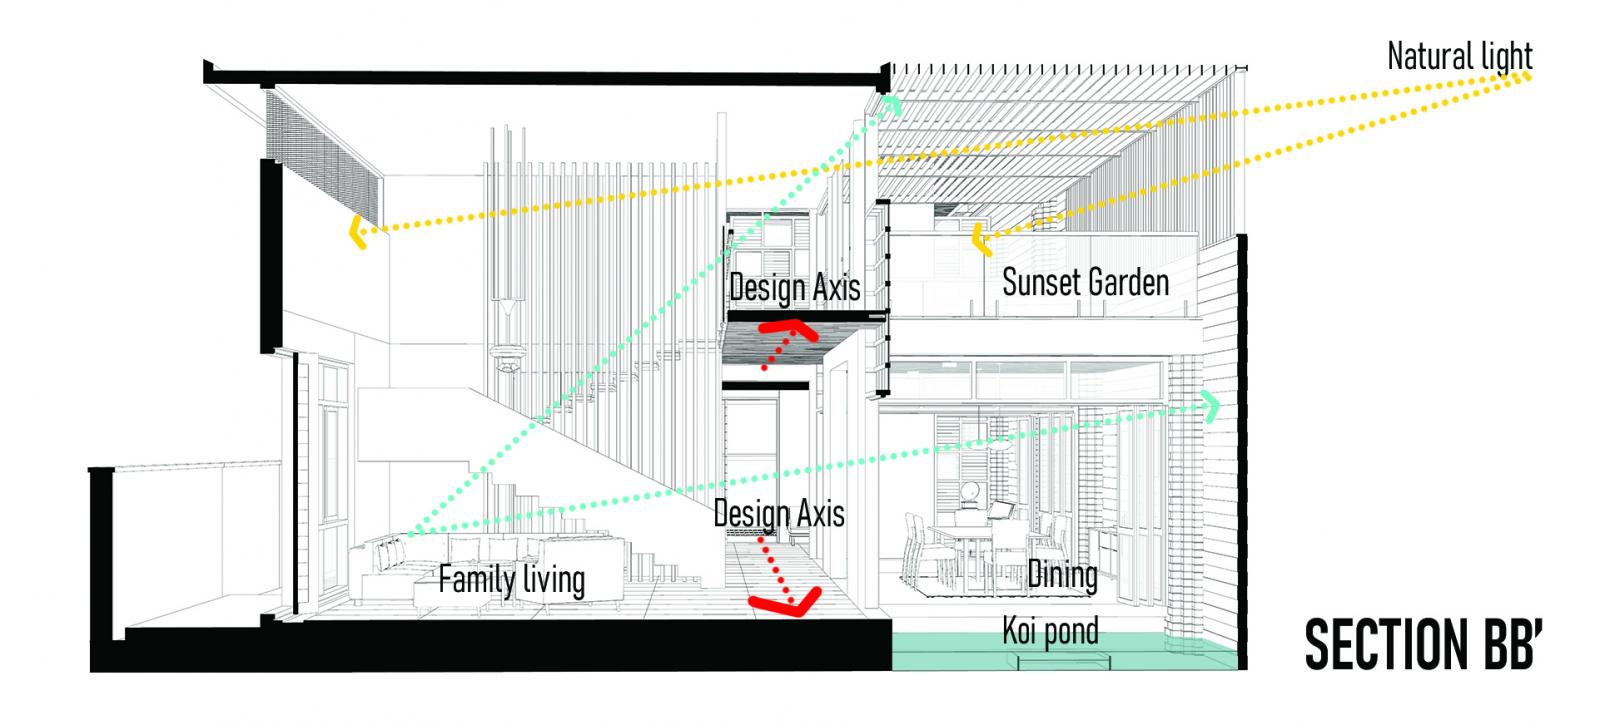 Thiết kế không gian sinh hoạt bao gồm phòng khách, phòng ăn, và khoảng sân xinh xắn với hồ cá Koi. Cùng với đó là ban công có mái che ở phía trên, mang tên "Vườn Hoàng hôn".